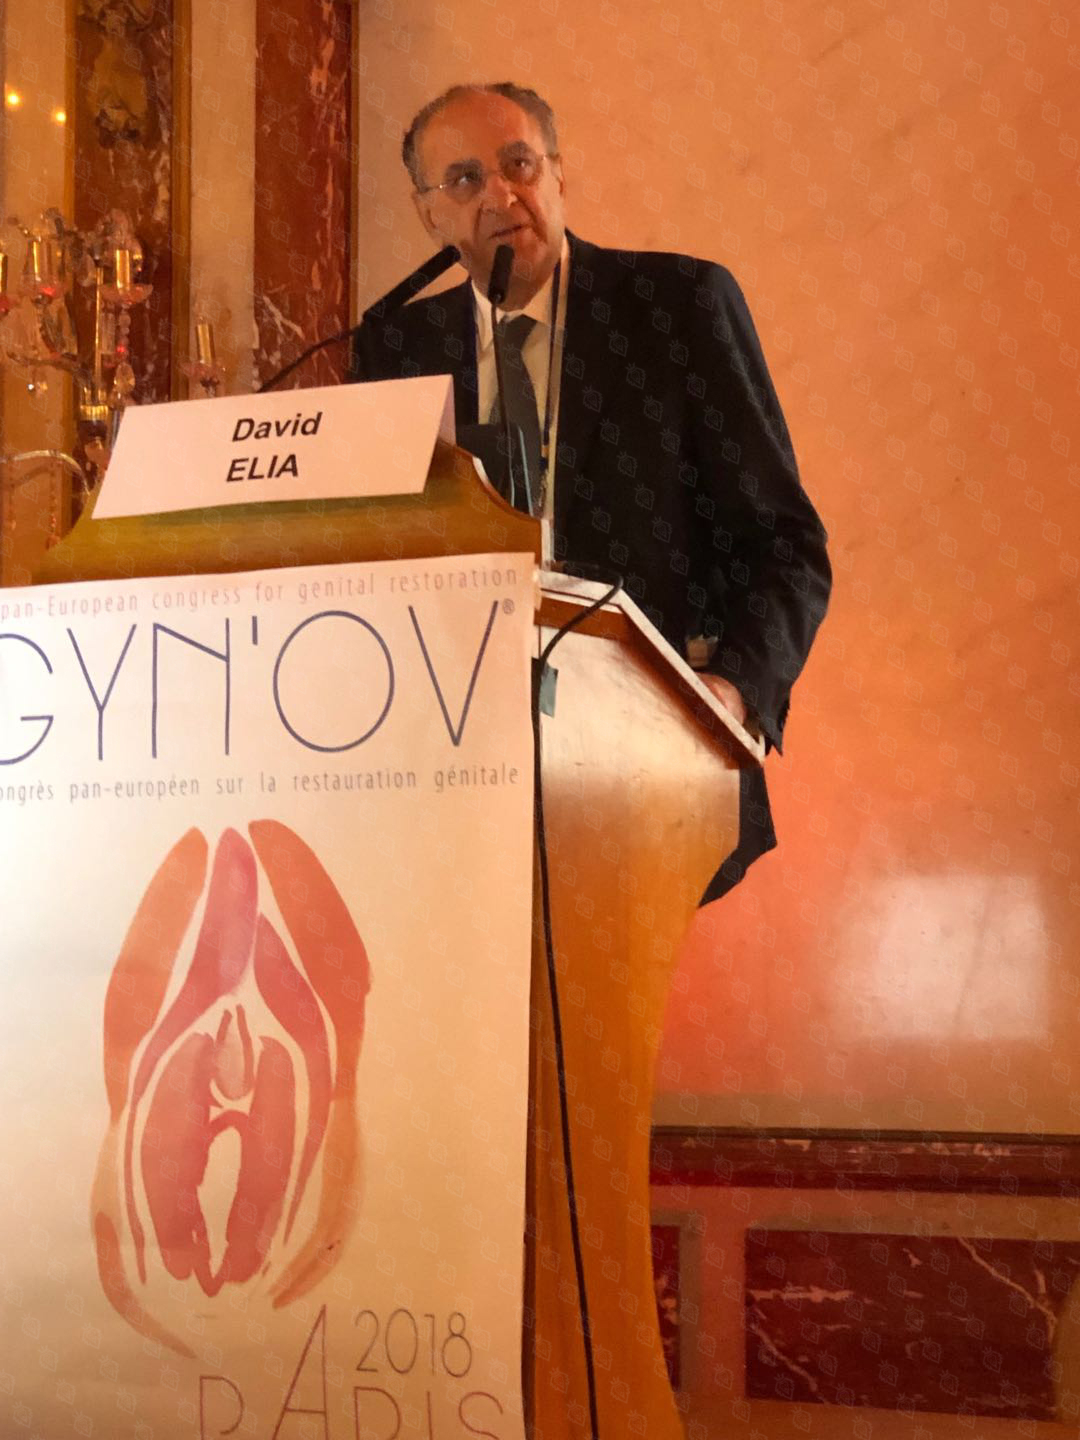 大卫·埃利亚医学博士在巴黎GYN’OV大会上发表专题演讲